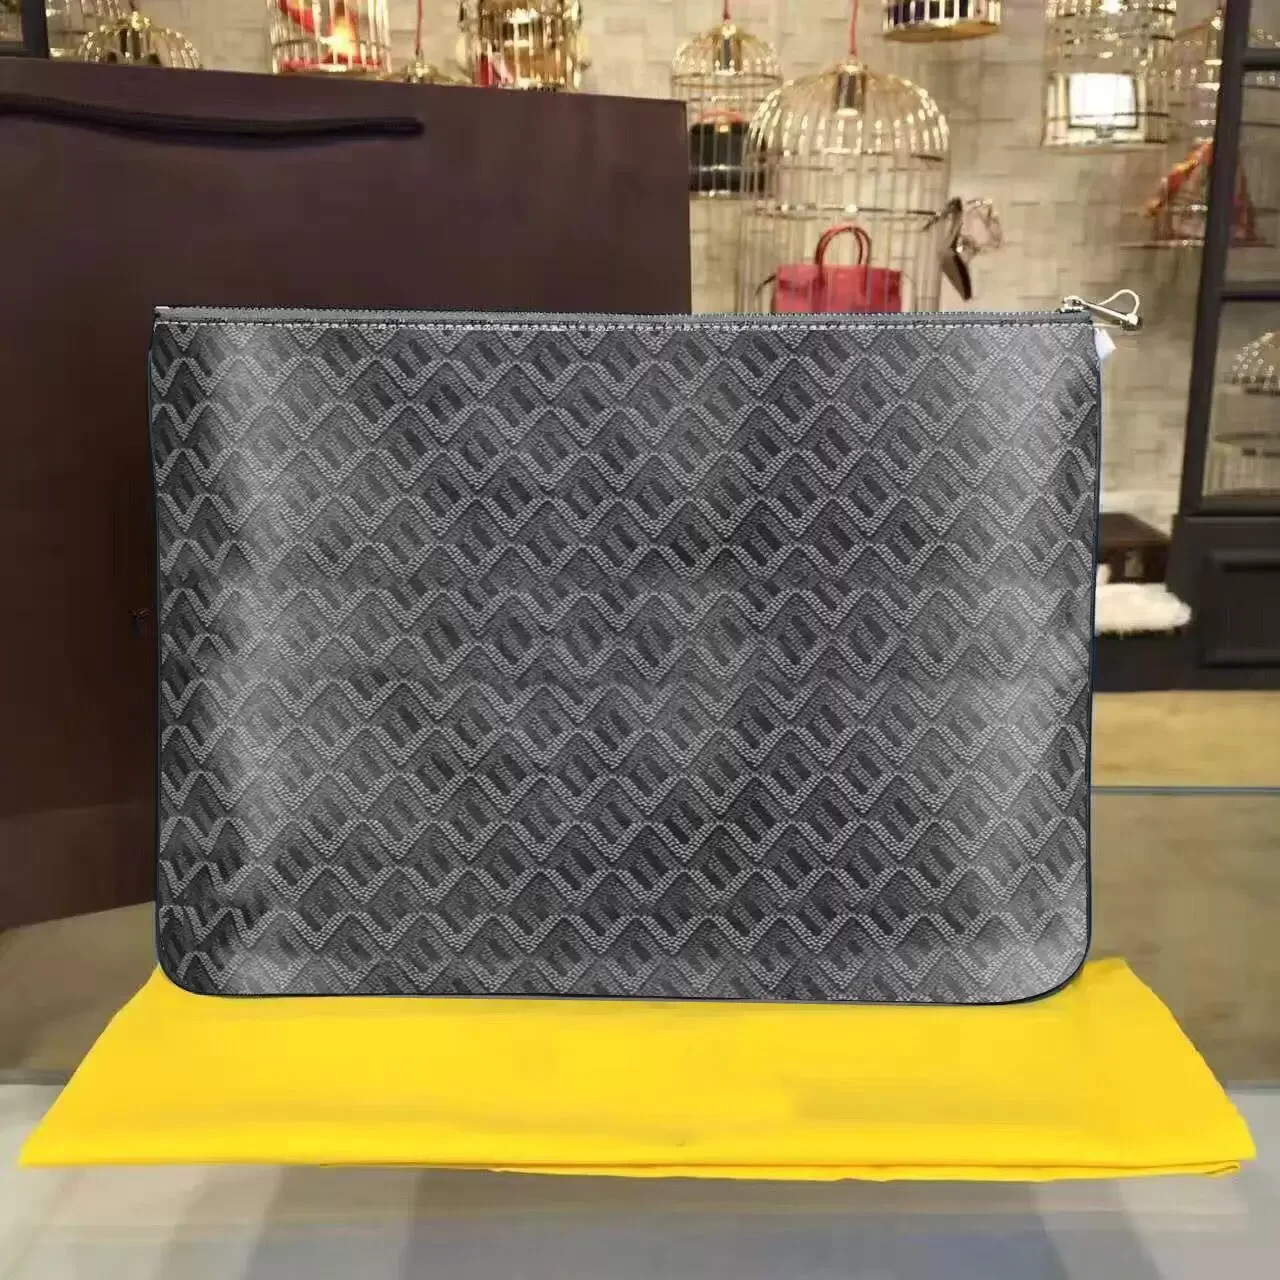 Réplica de Louis Vuitton para mujer Lock It flat mule a la venta con precio  barato en la tienda de bolsos falsos